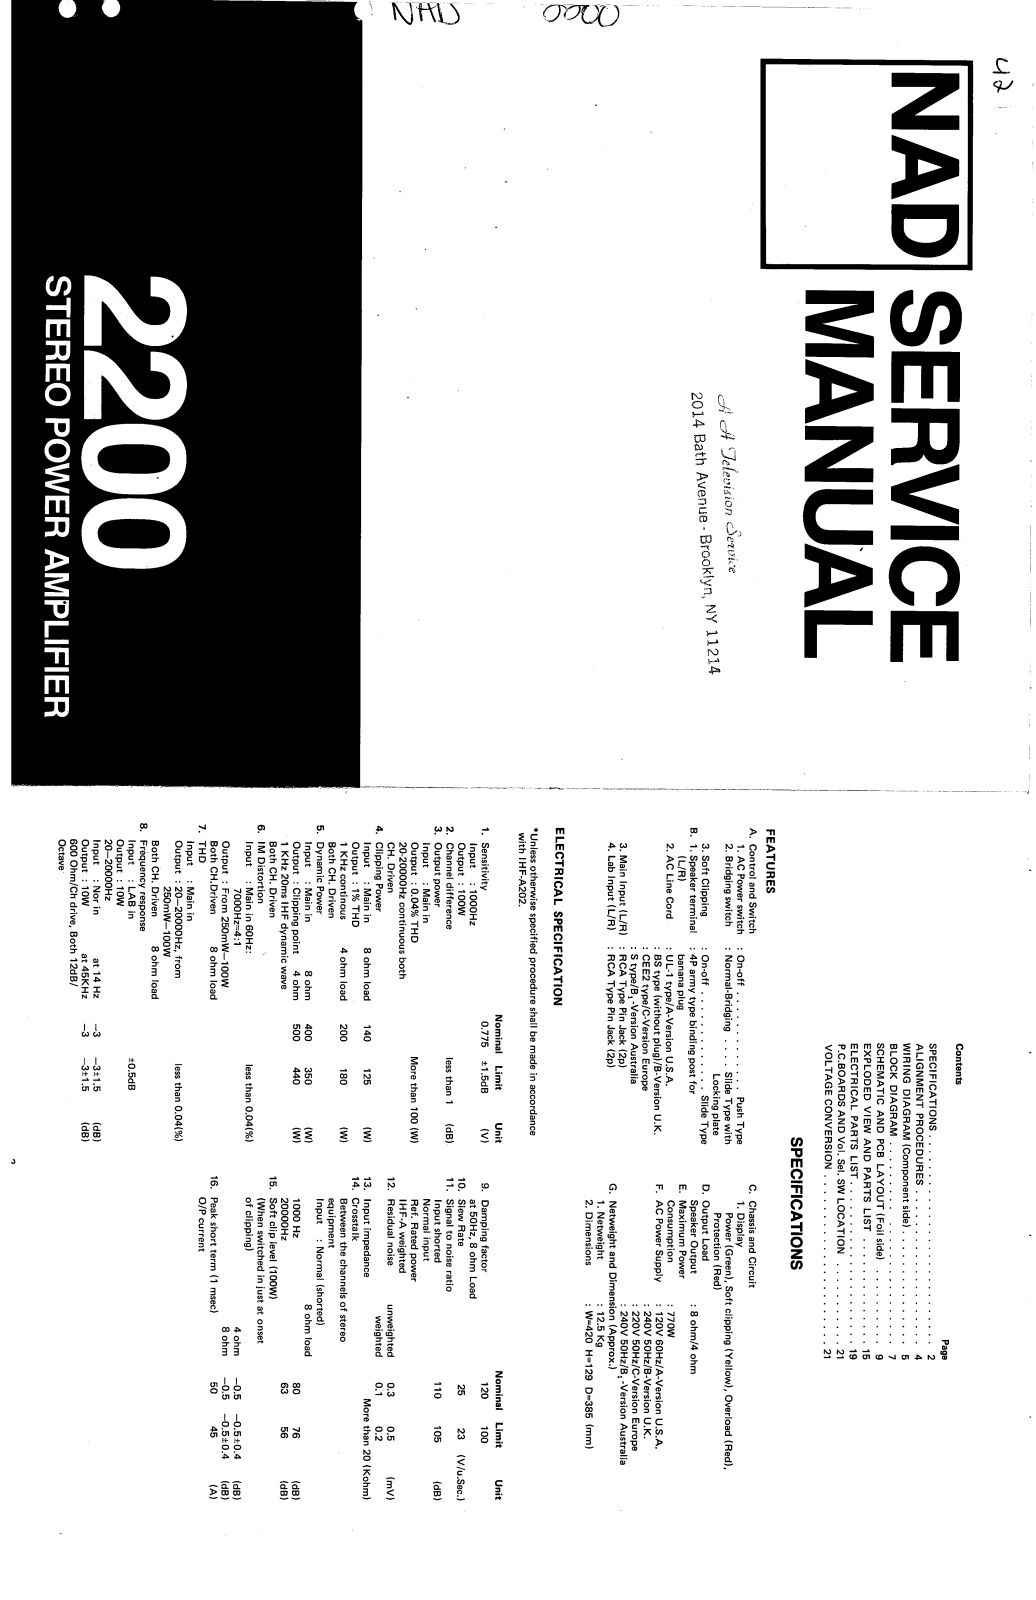 NAD 2200, D-2200 Service manual